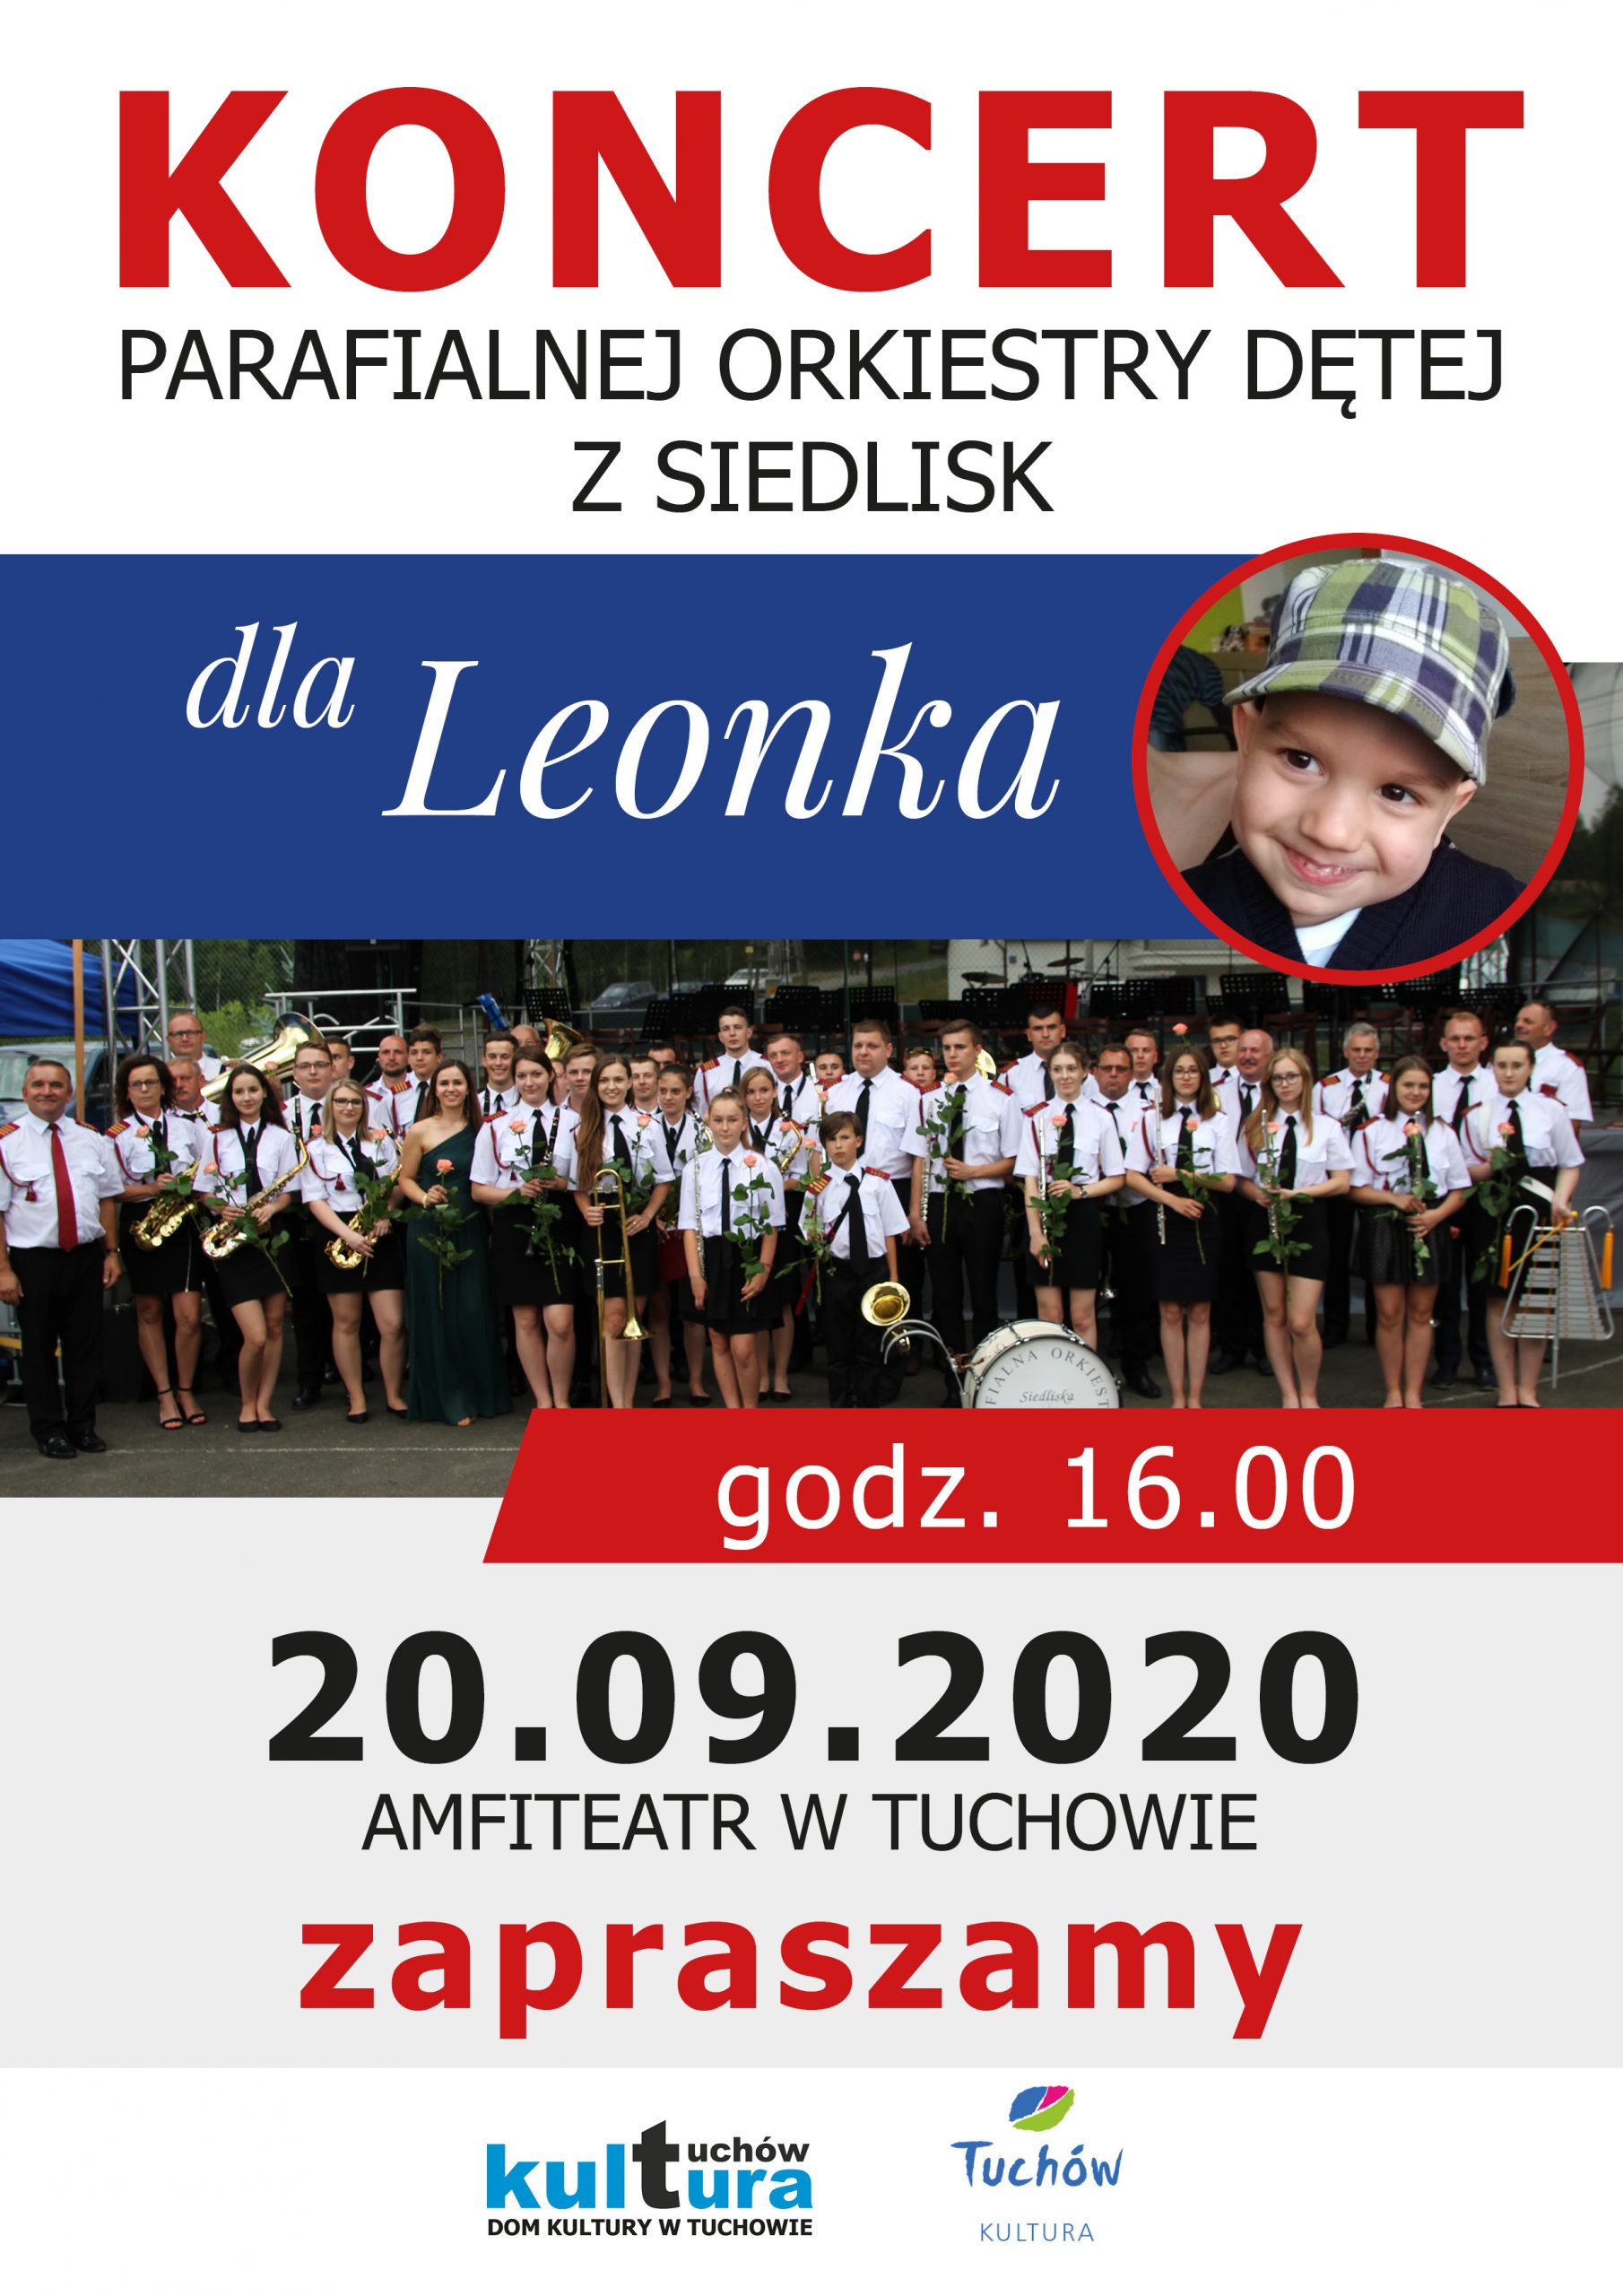 Parafialna Orkiestra Dęta z Siedlisk zagra dla Leonka